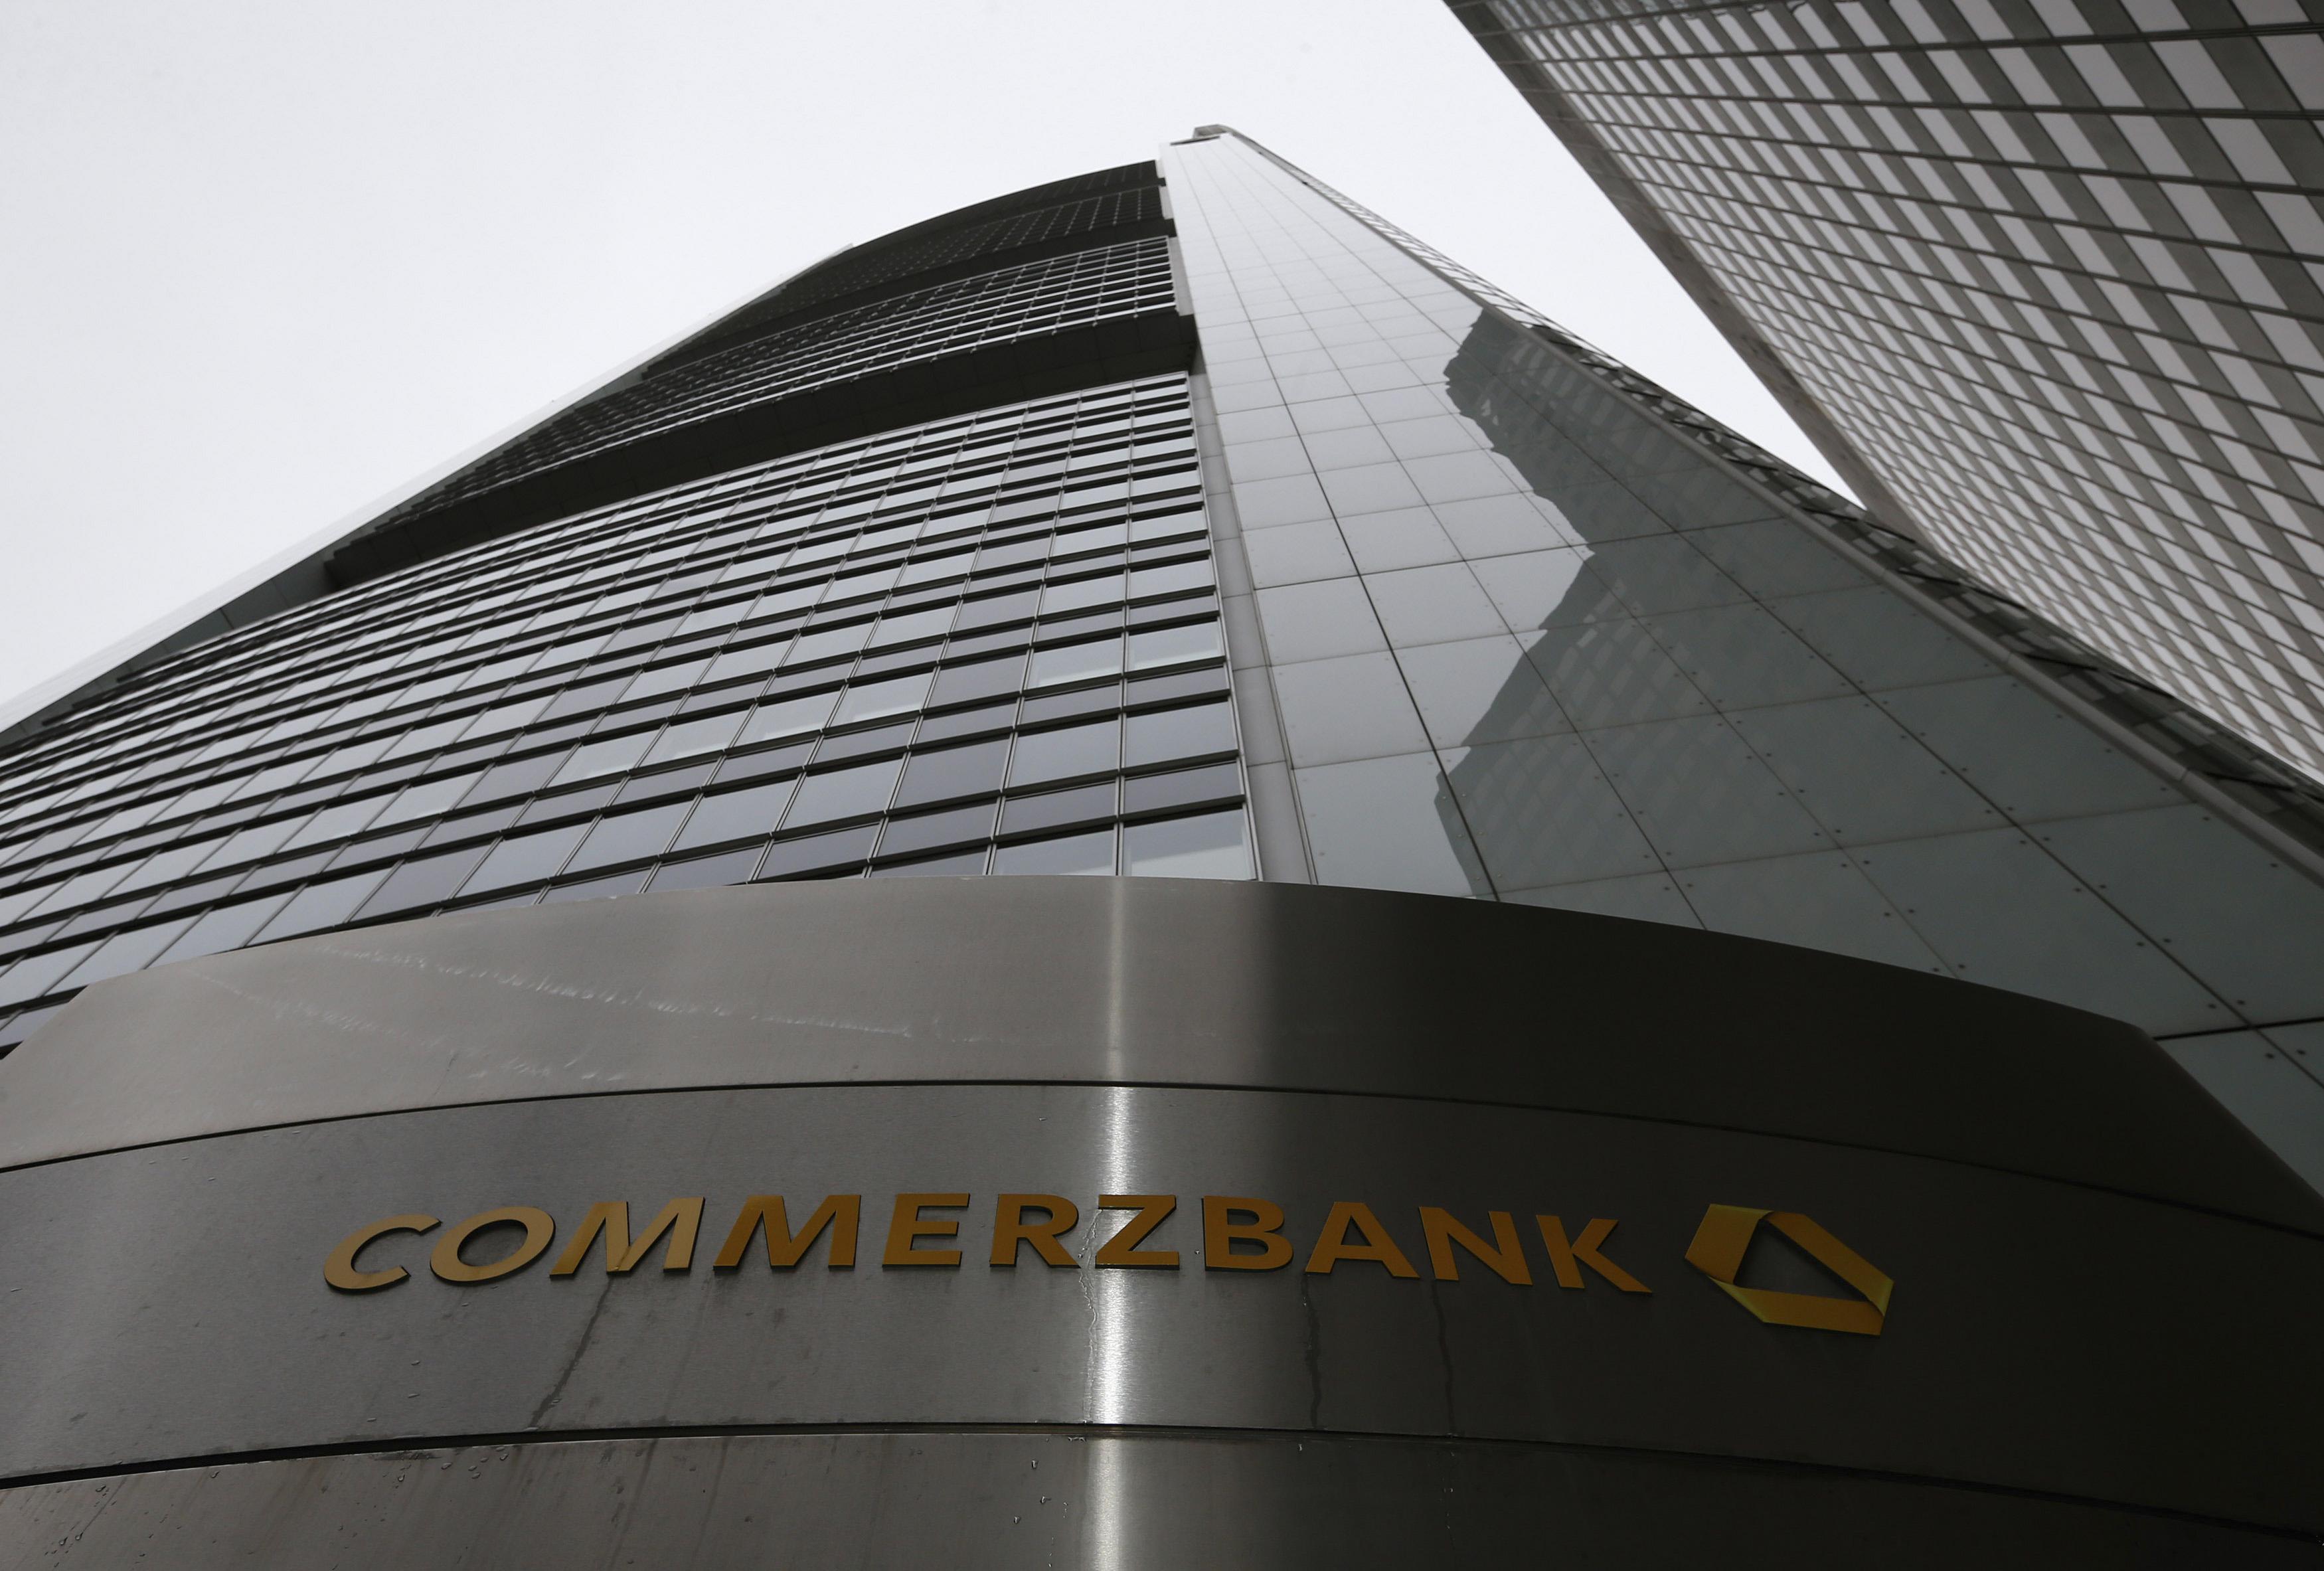 Πρόστιμο 500 εκατ. δολαρίων αντιμετωπίζει η Commerzbank